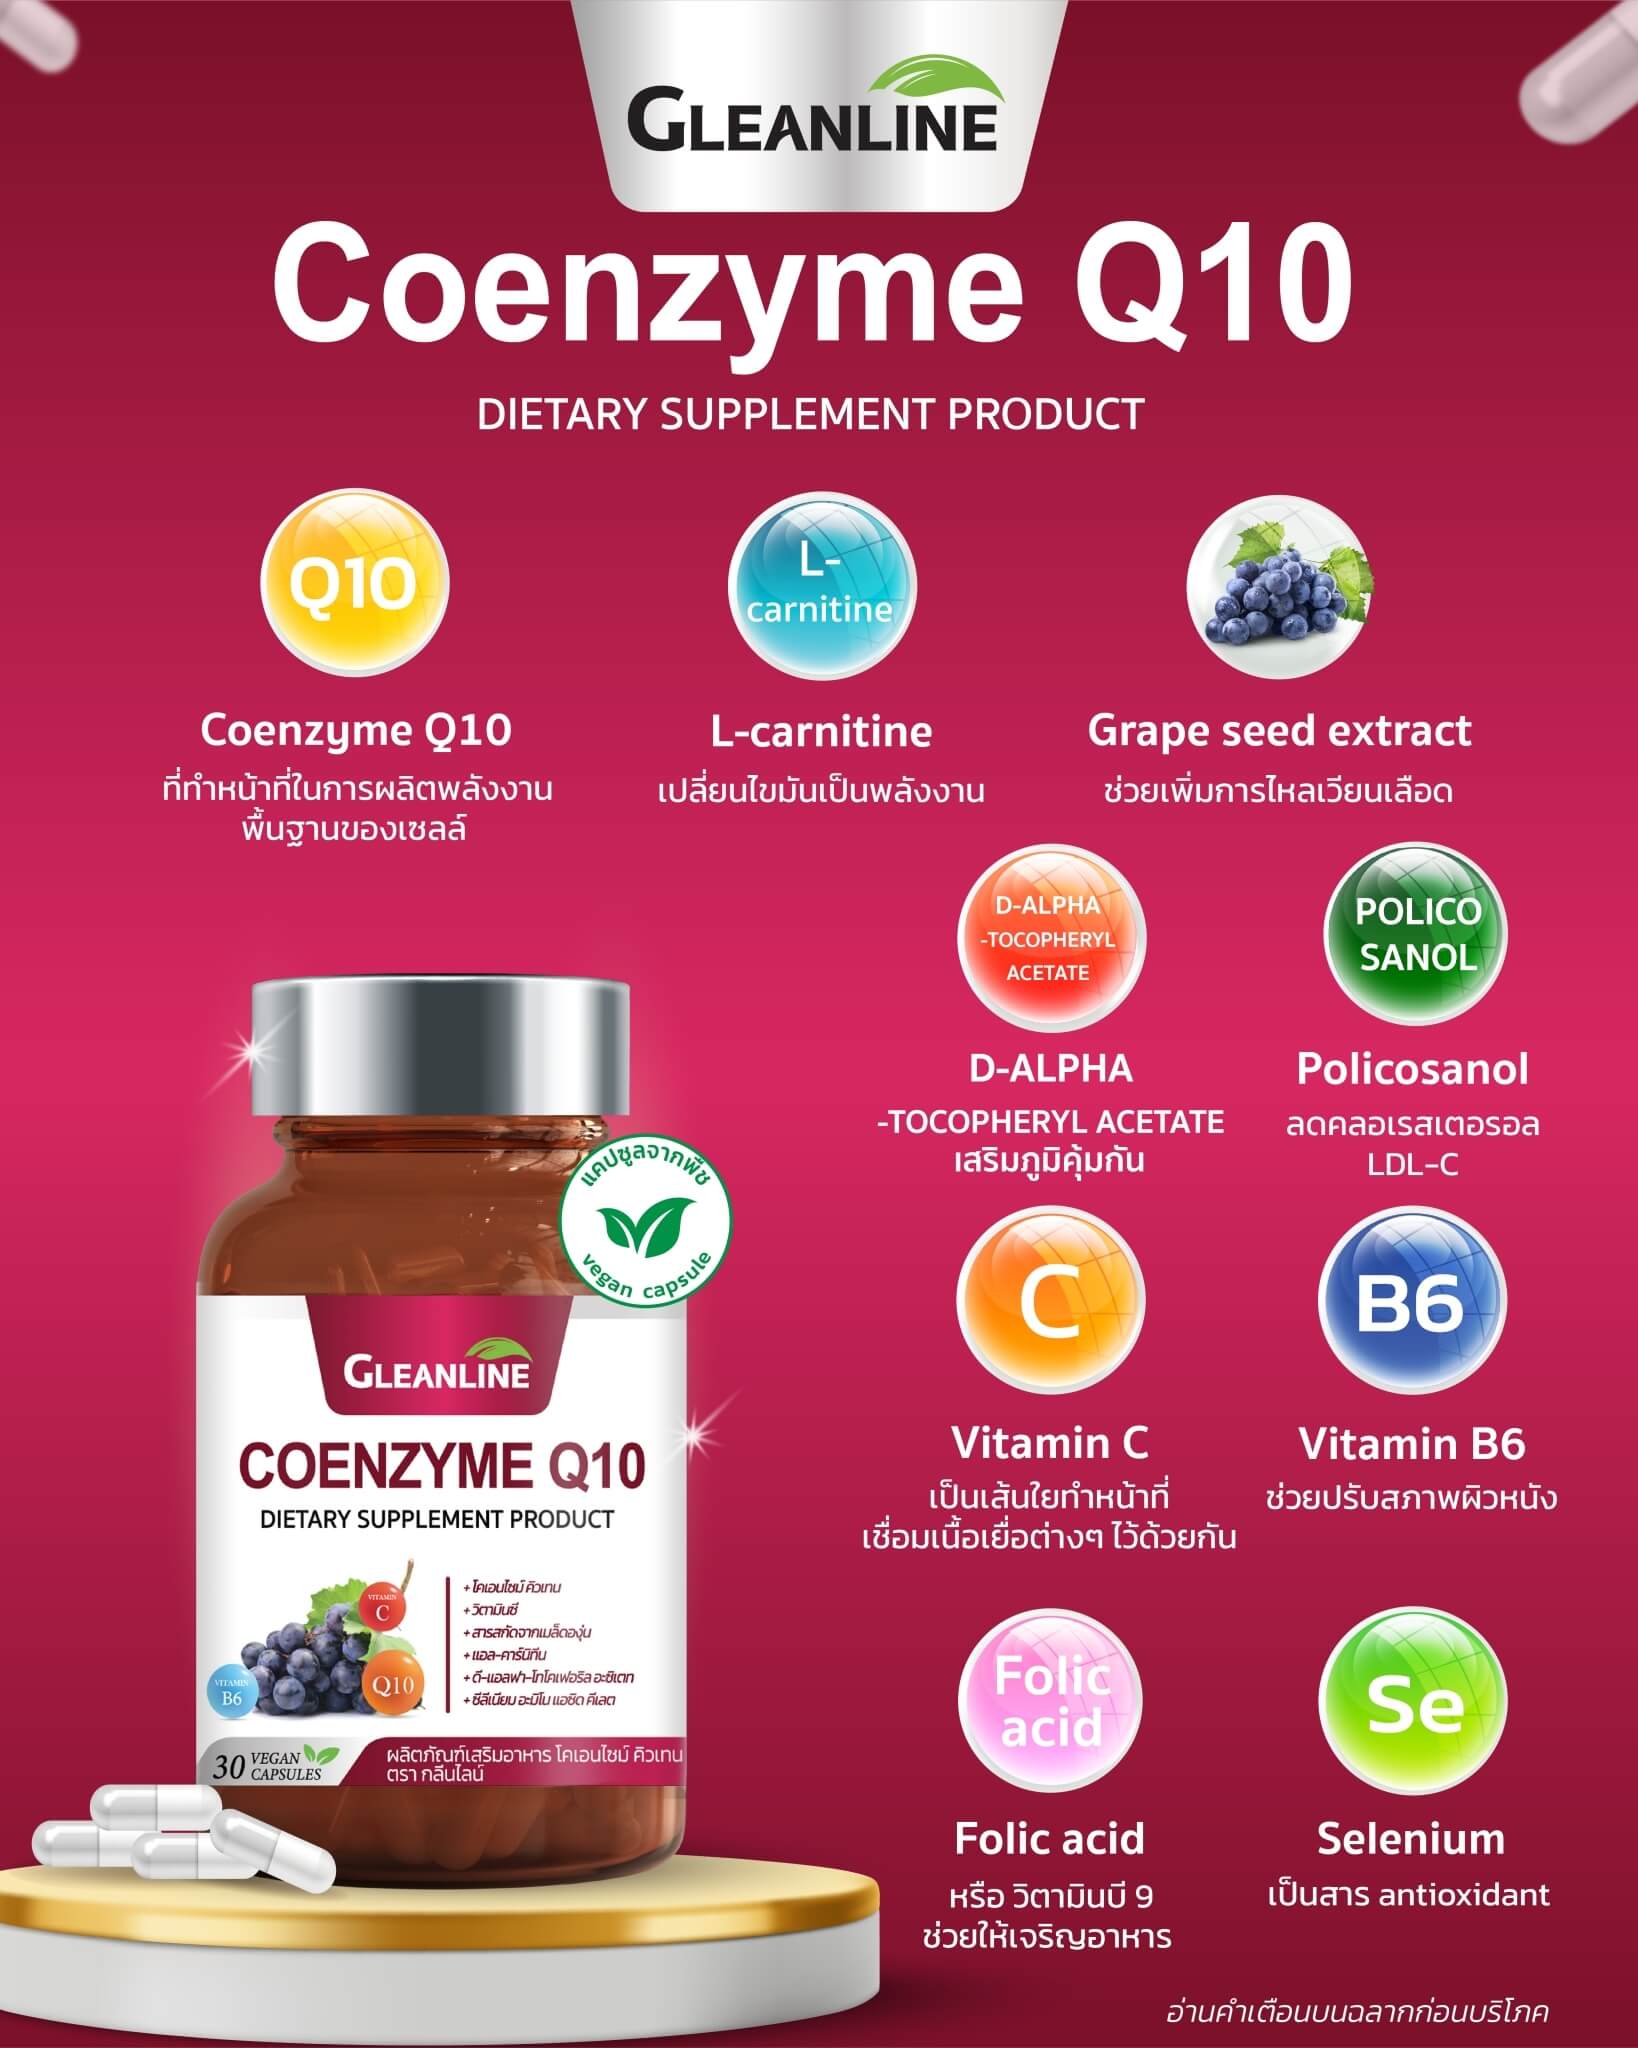 Gleanline,Coenzyme Q10,Gleanline Coenzyme Q10,กลีนไลน์,โคเอนไซม์